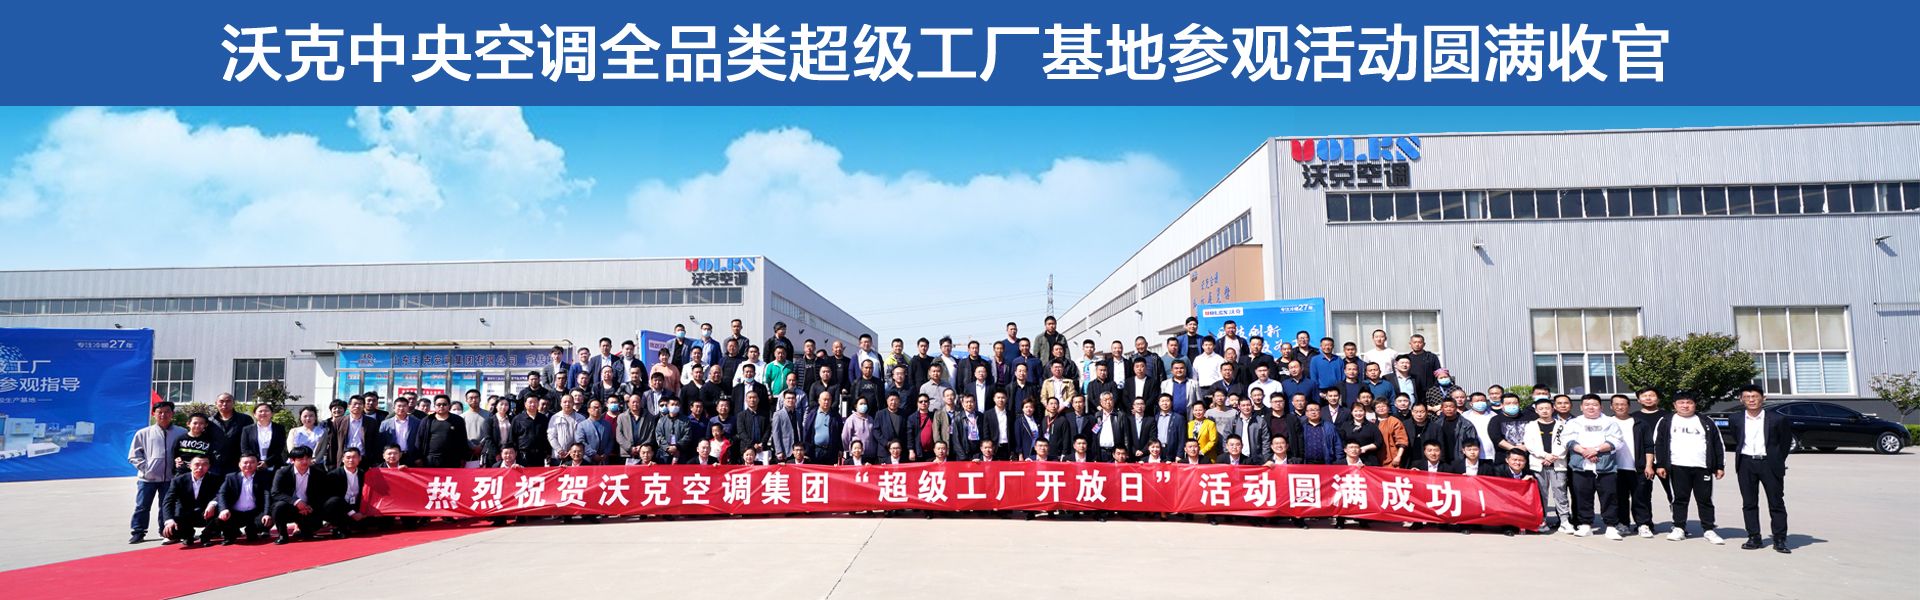 新莆京游戏大厅中央空调全品类超级工厂参观活动